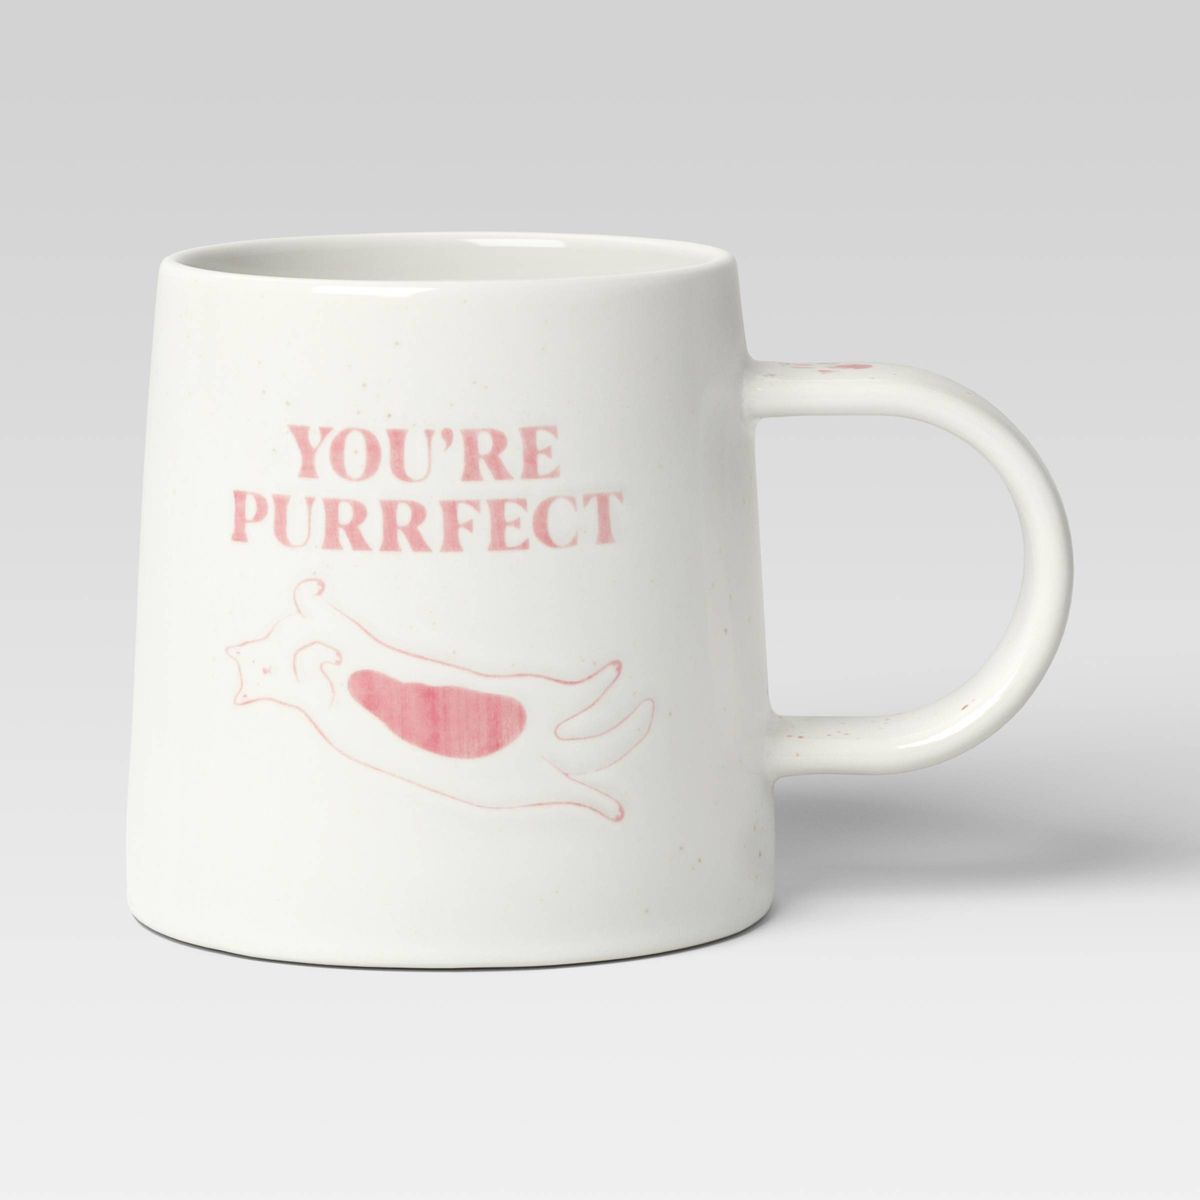 16oz Stoneware You're Purrfect Mug - Room Essentials™ | Target